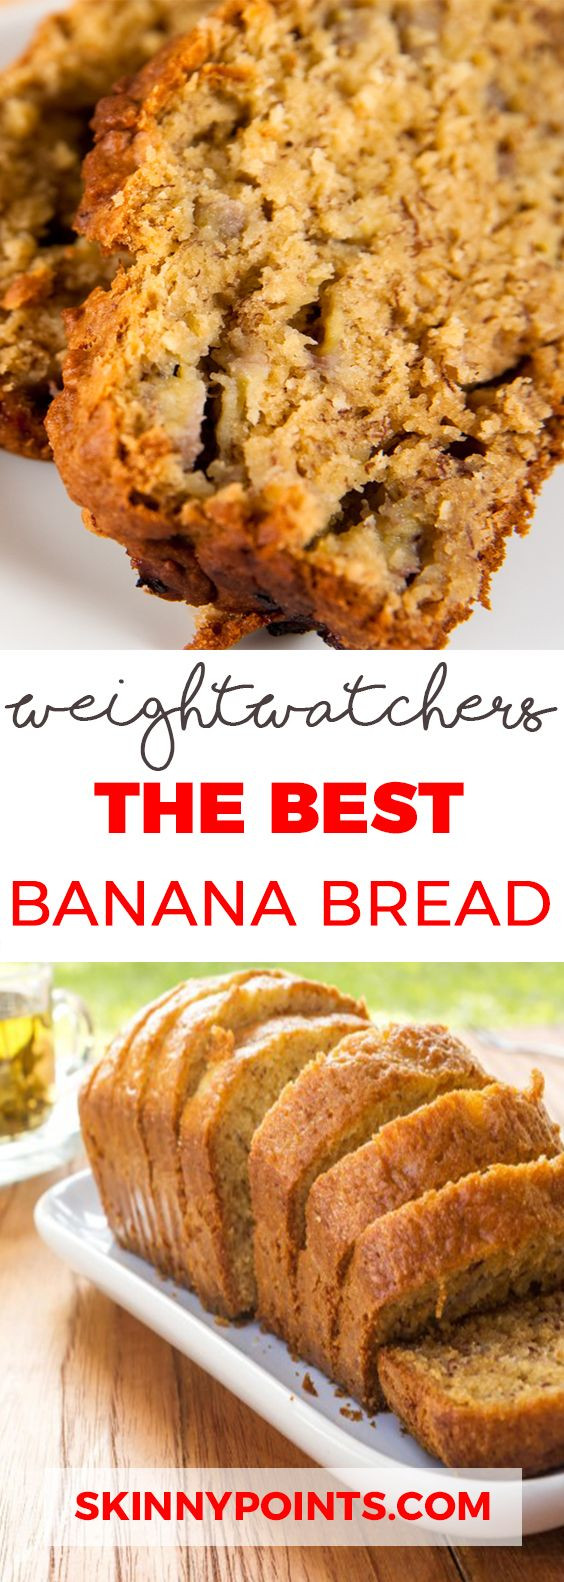 Best Weight Watchers Desserts
 25 Best Weight Watchers Desserts Recipes with SmartPoints